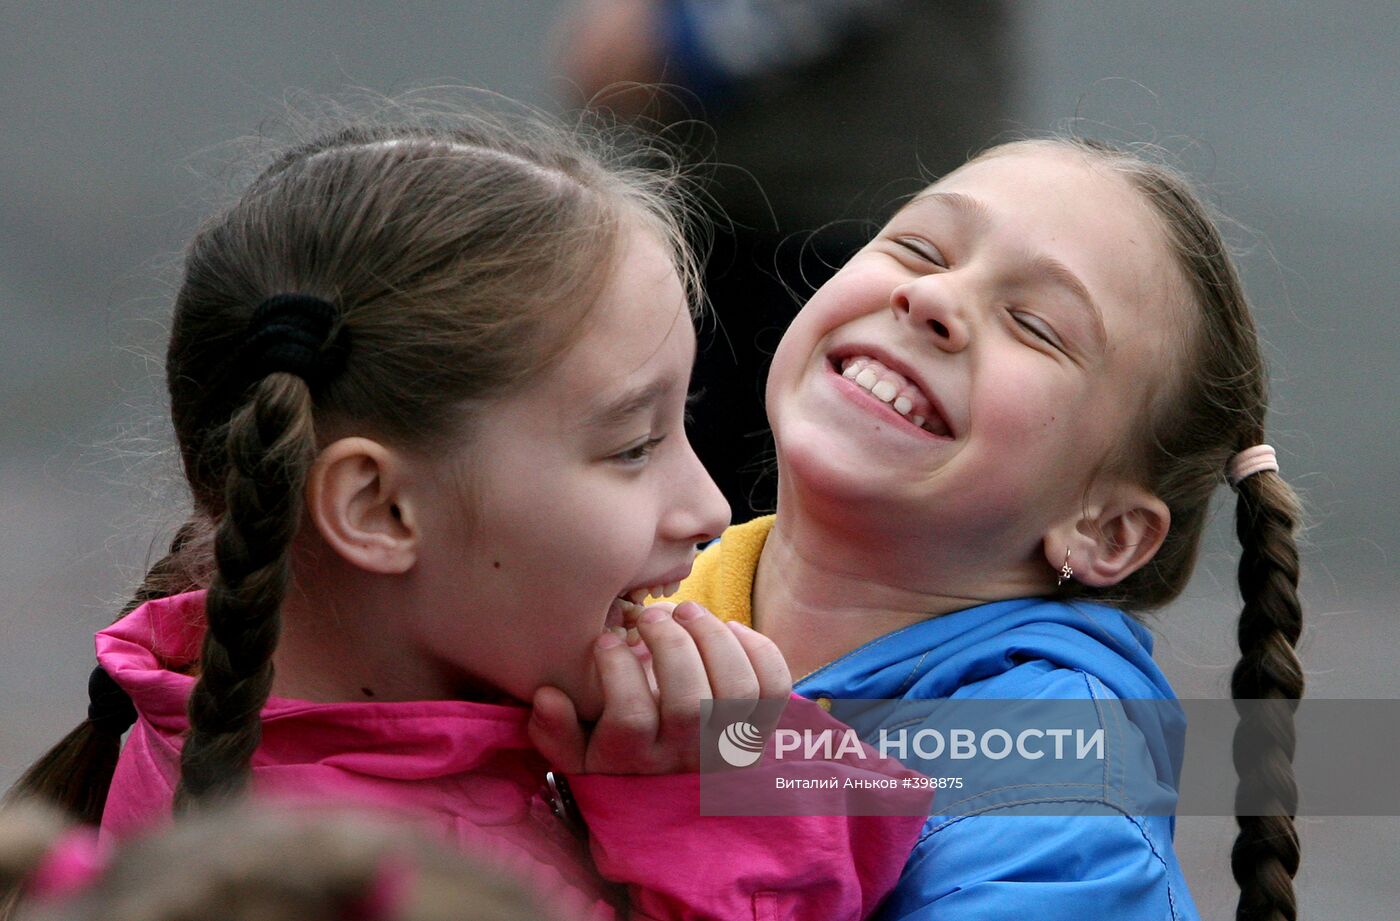 Праздник во Владивостоке, посвященный Дню защиты детей